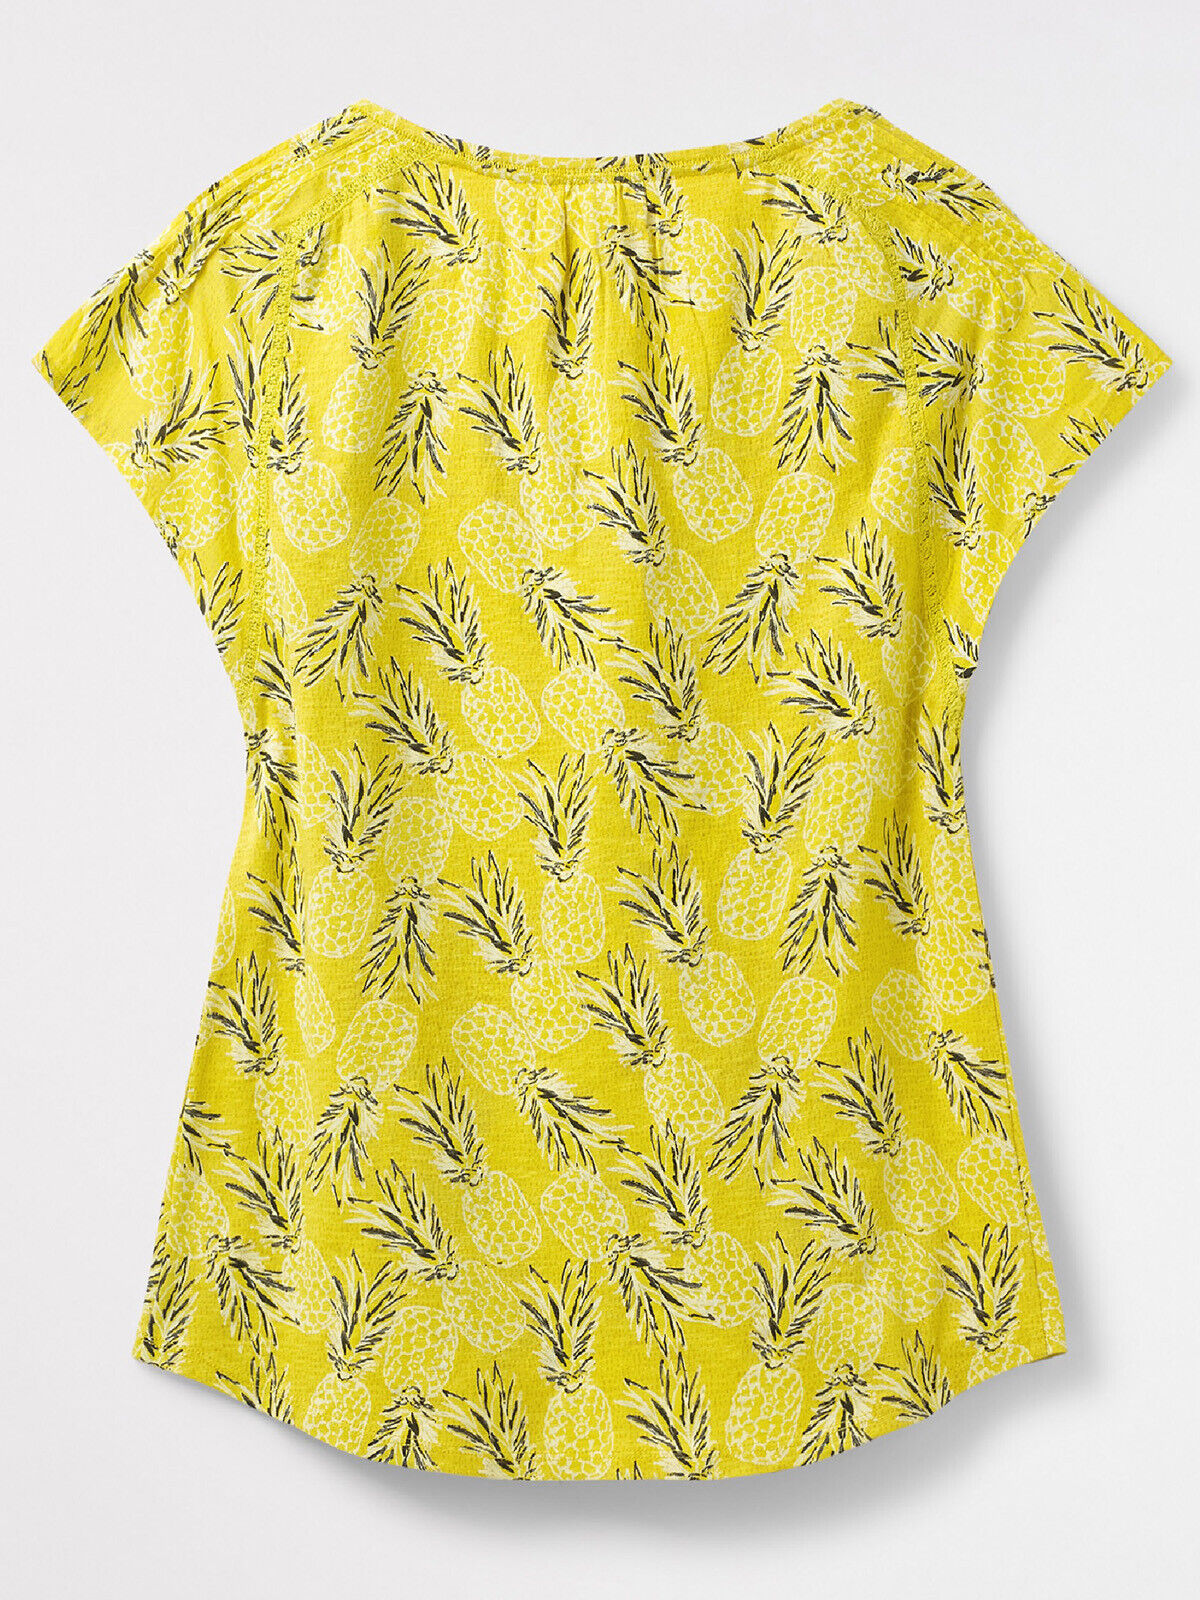 EX WHITE STUFF Yellow Raindance Jersey Tee in Sizes 10, 16, 18 RRP £37.50